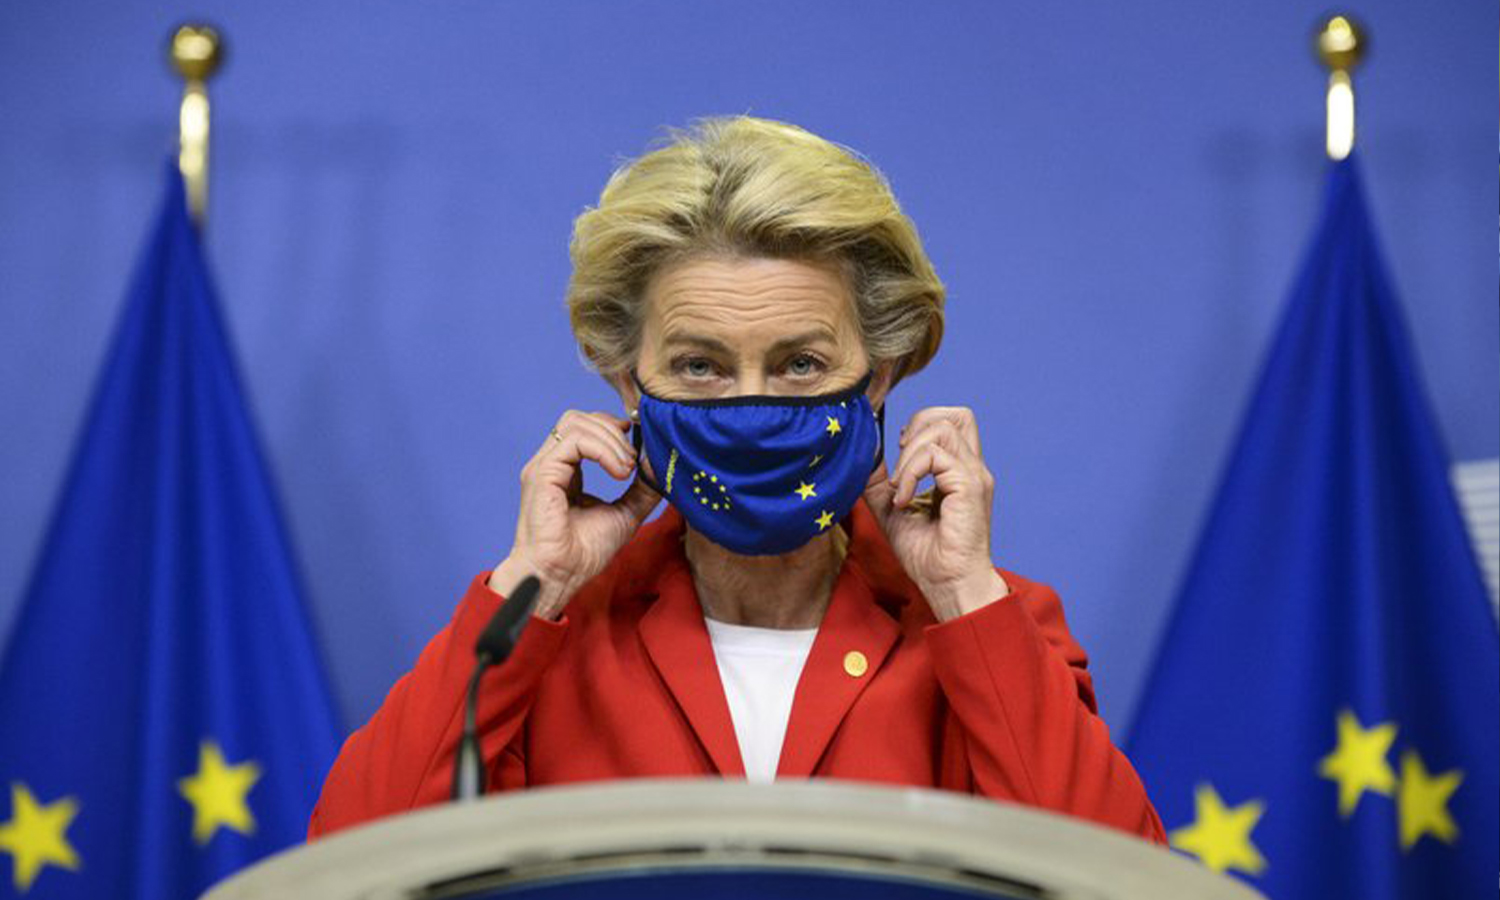 خلعت رئيسة المفوضية الأوروبية أورسولا فون دير لاين قناعها الواقي قبل الإدلاء ببيان بشأن اتفاقية الانسحاب في مقر الاتحاد الأوروبي في بروكسل - الخميس 1 من تشرين الأول 2020 (AP)